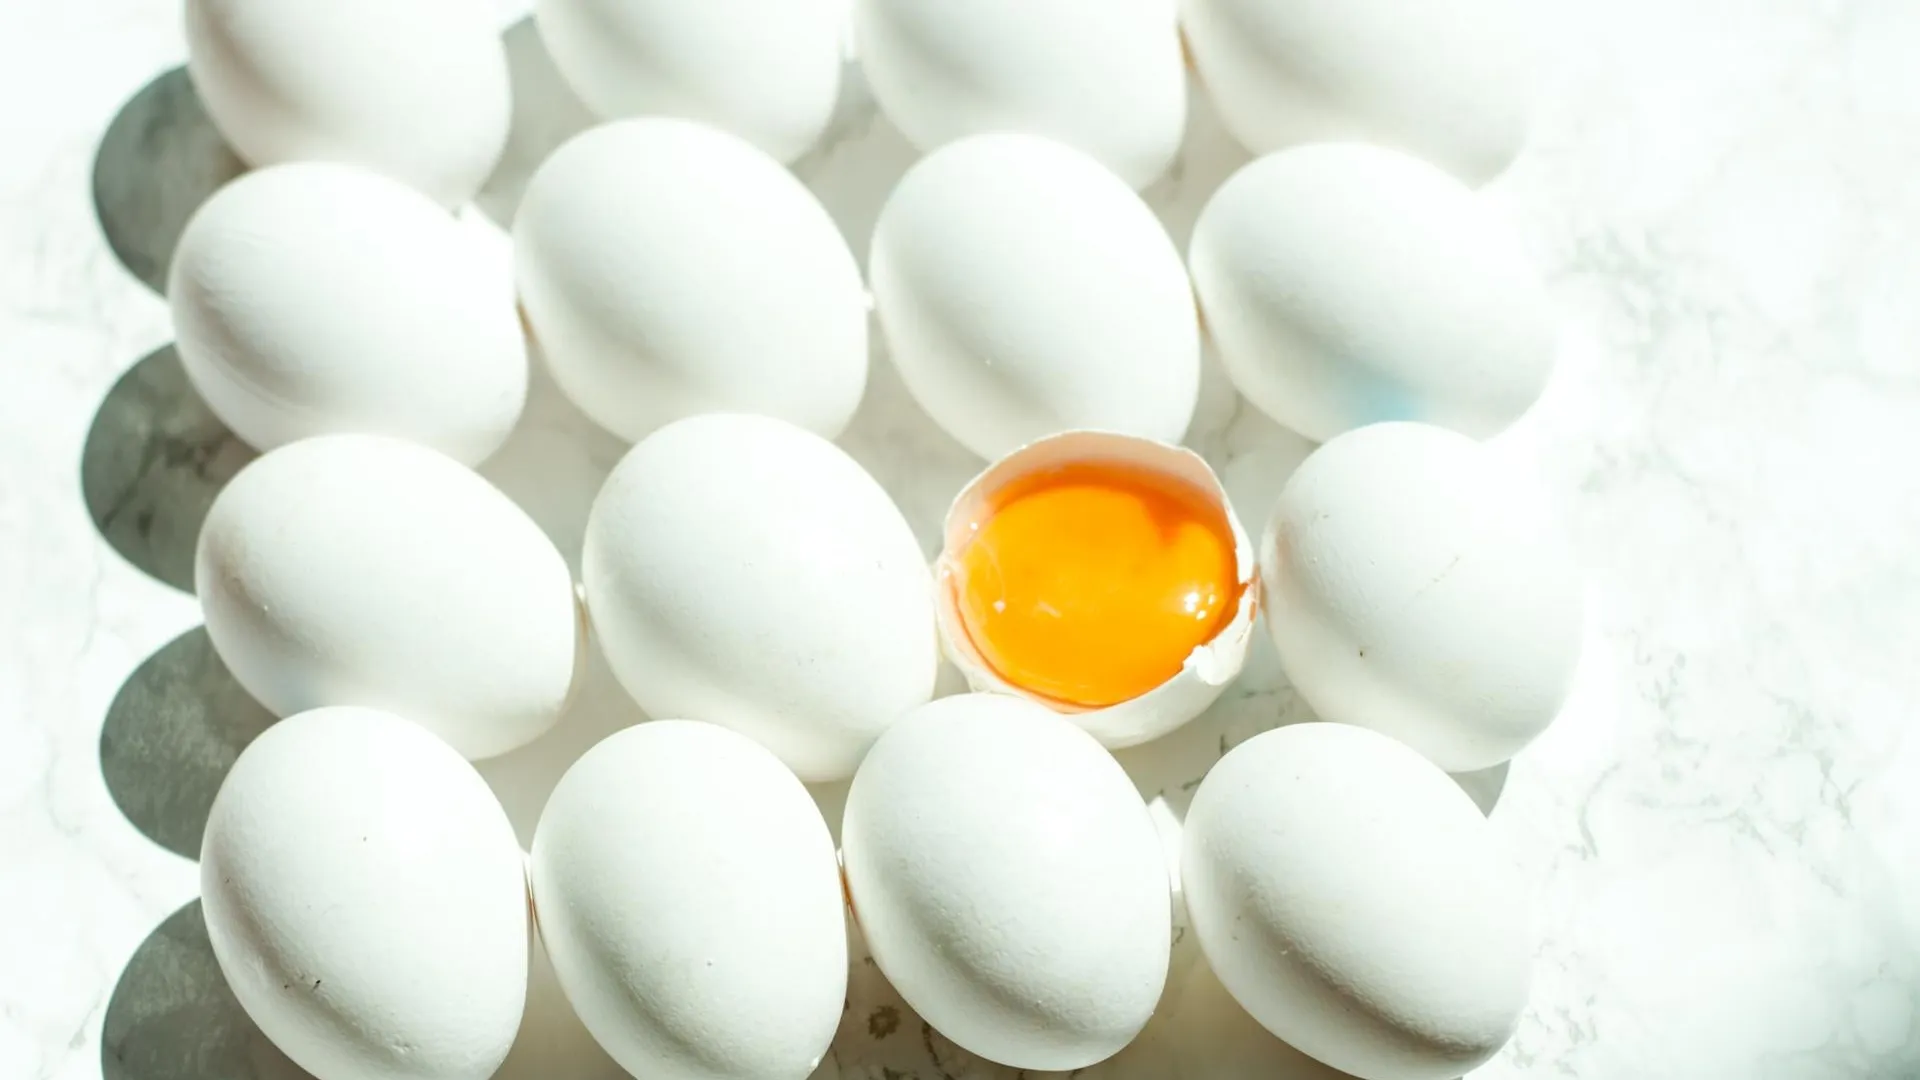 Картельный сговор продавцов яиц выявили в ДНР